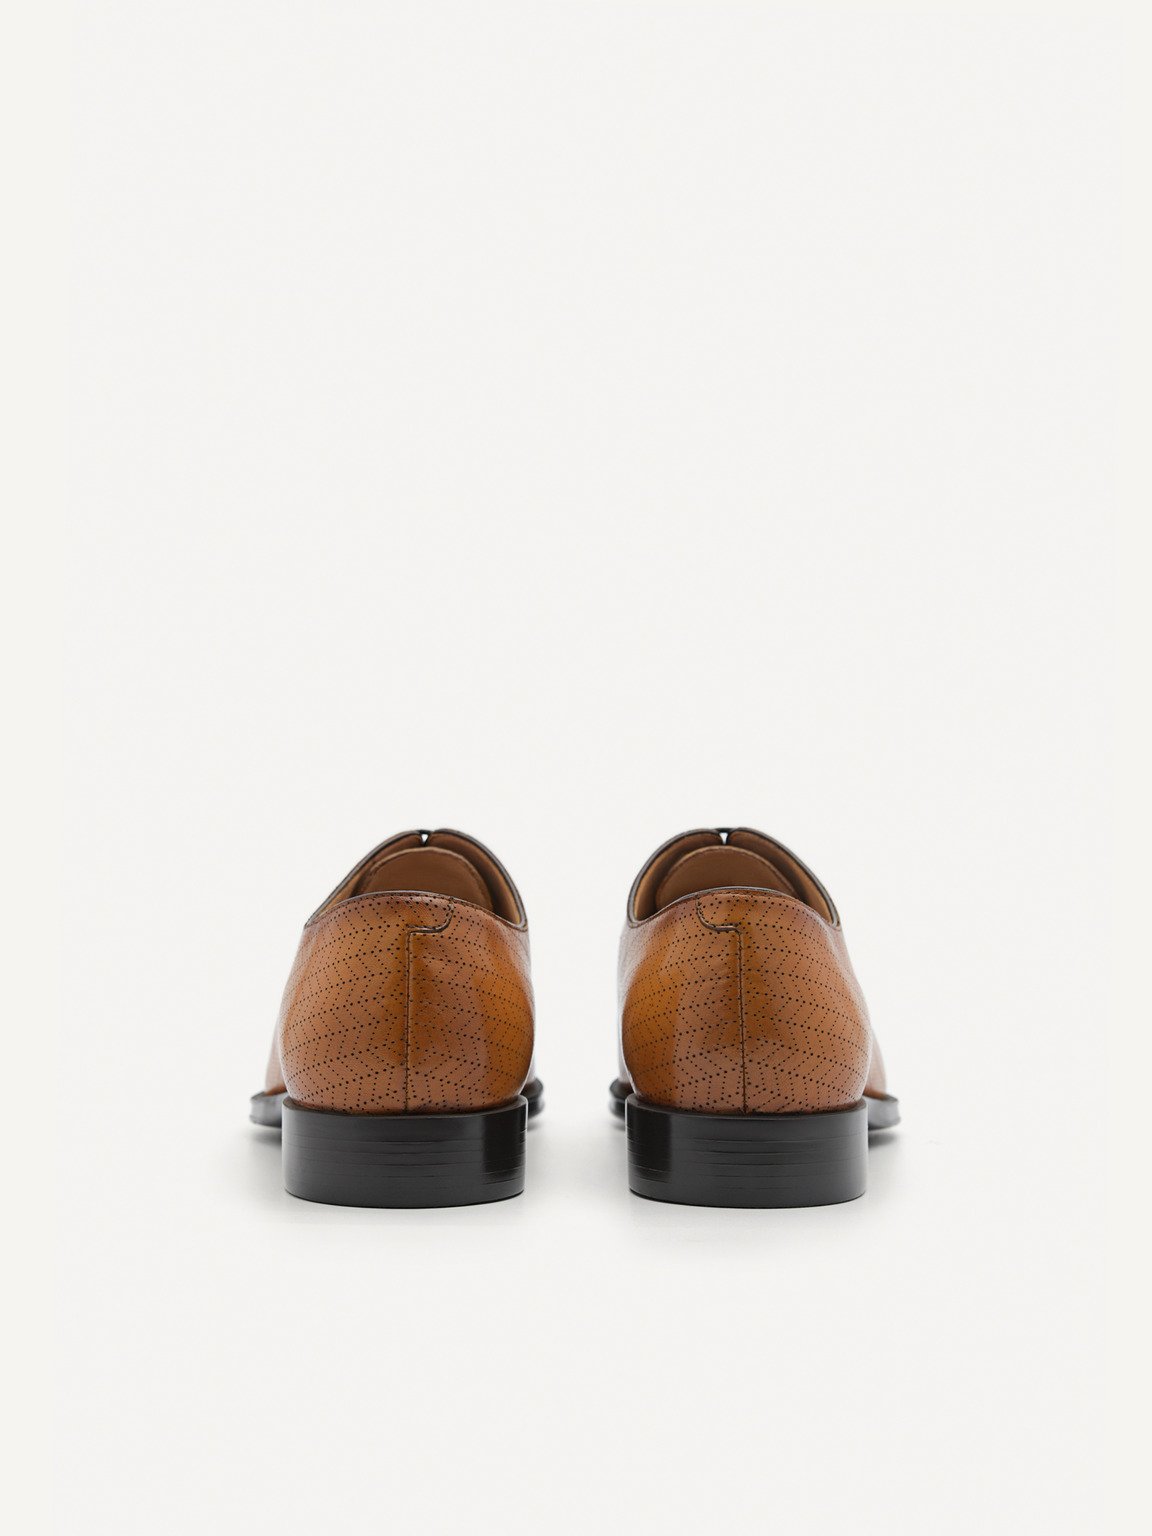 壓紋皮革牛津鞋, 驼色